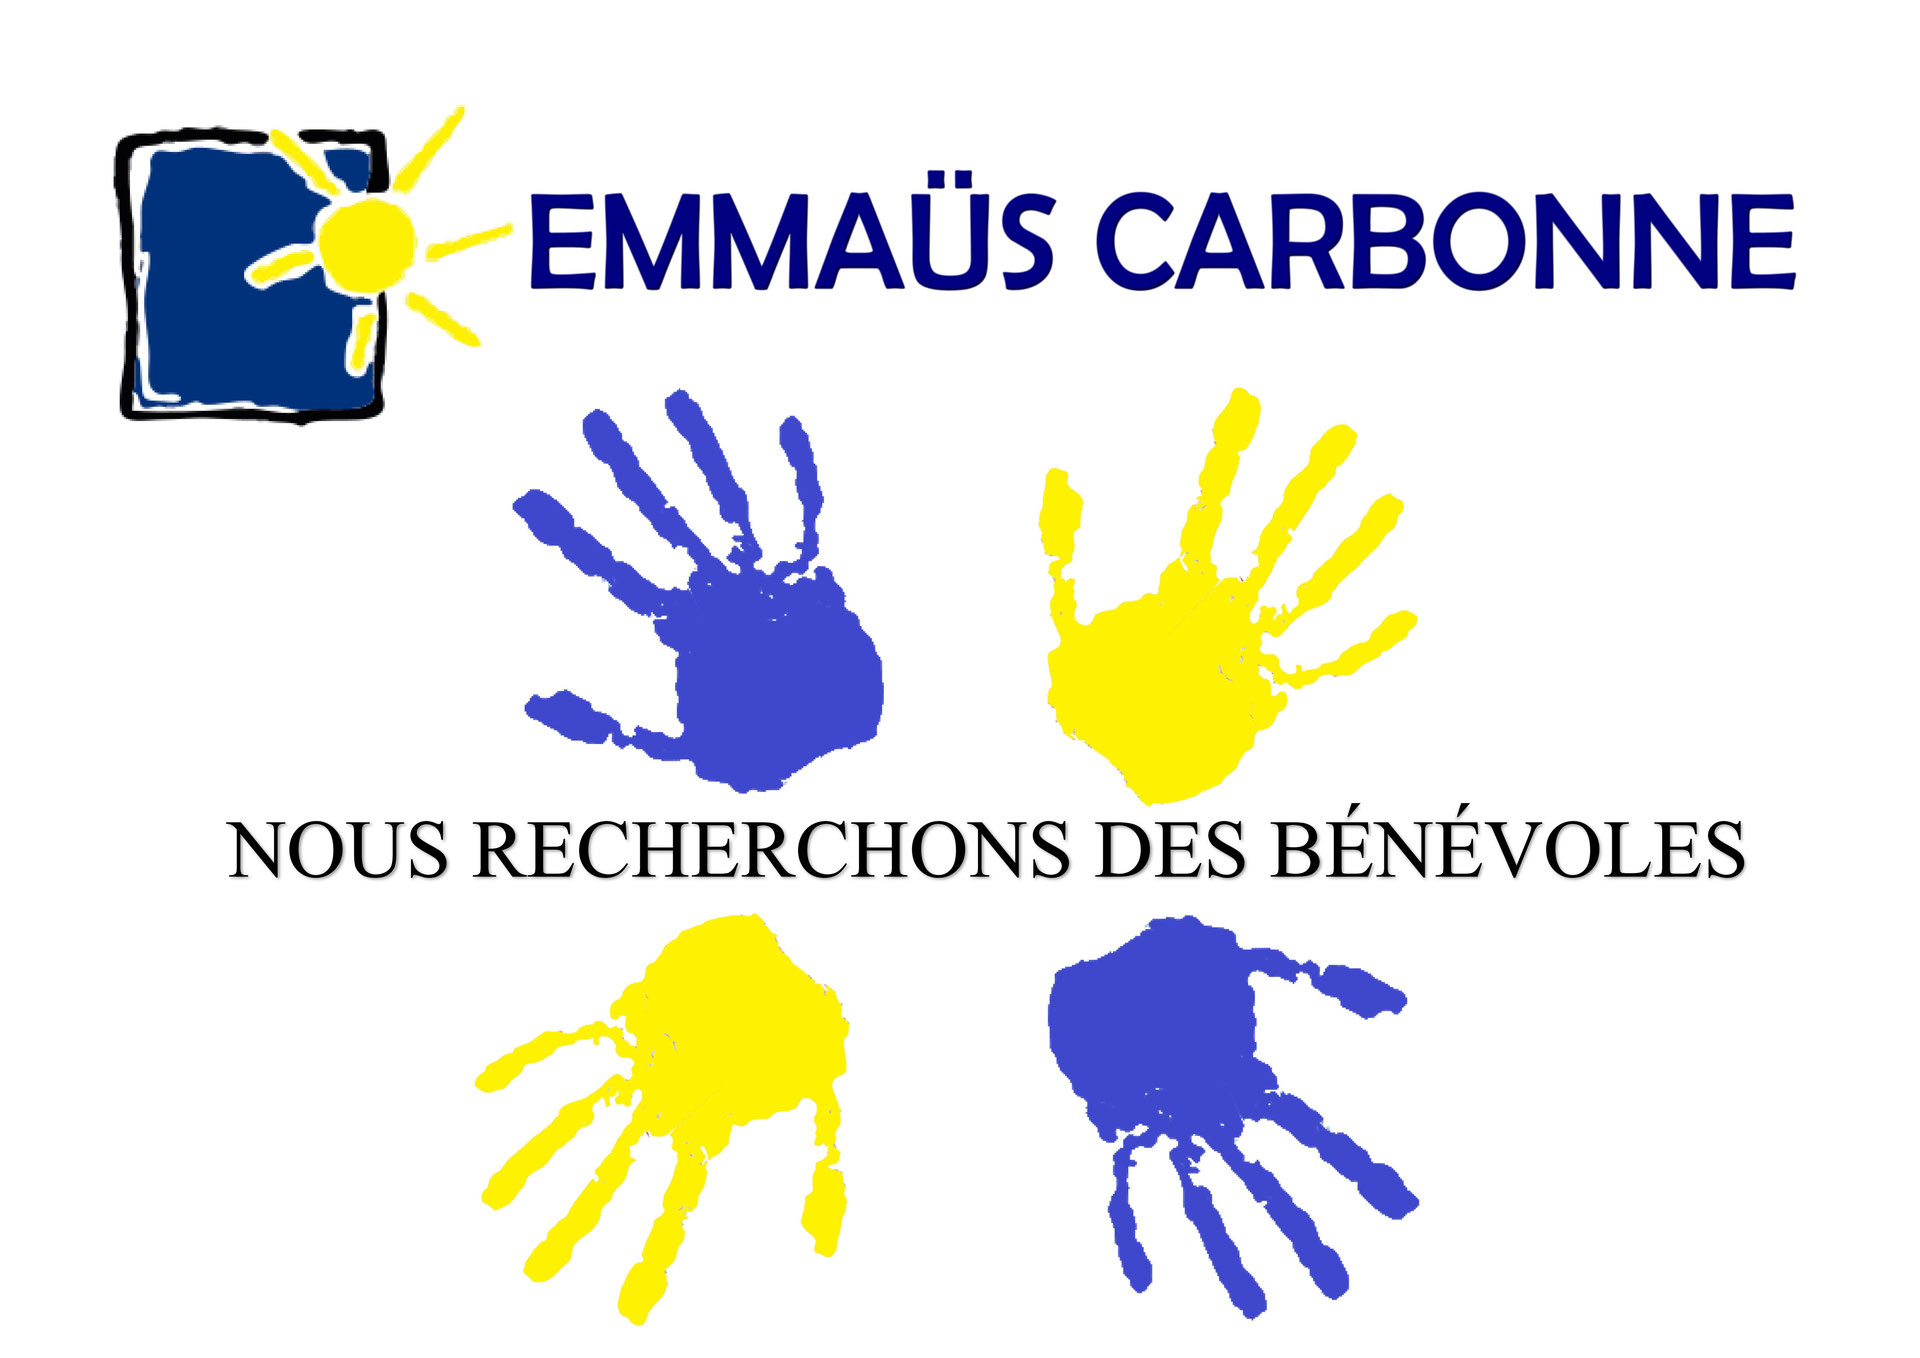 (c) Emmaus-carbonne.fr